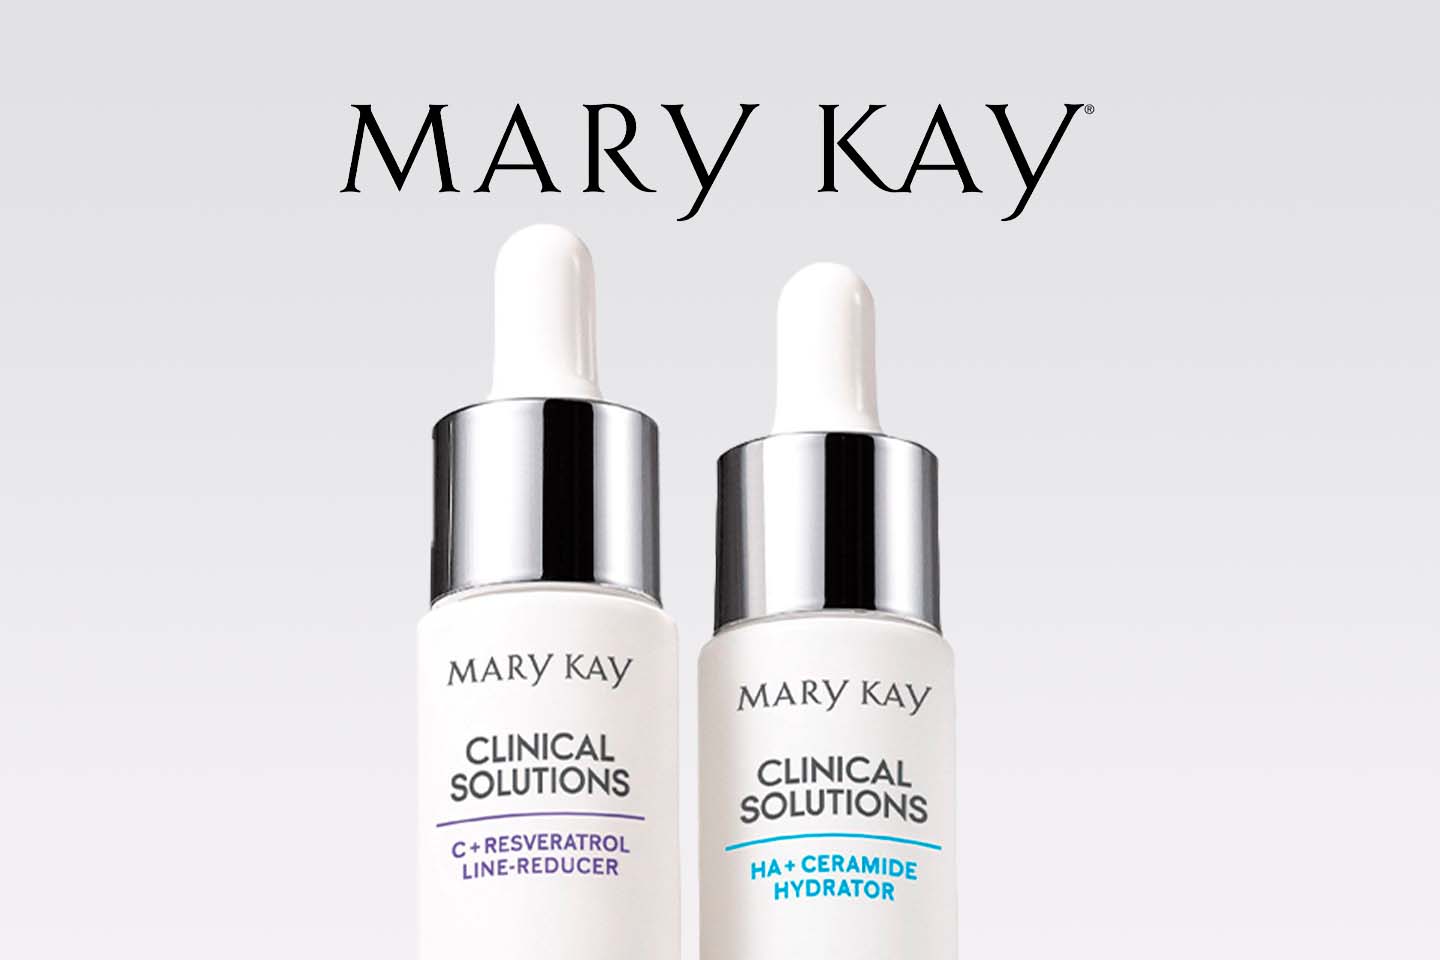 Deux soins pour la peau Mary Kay 